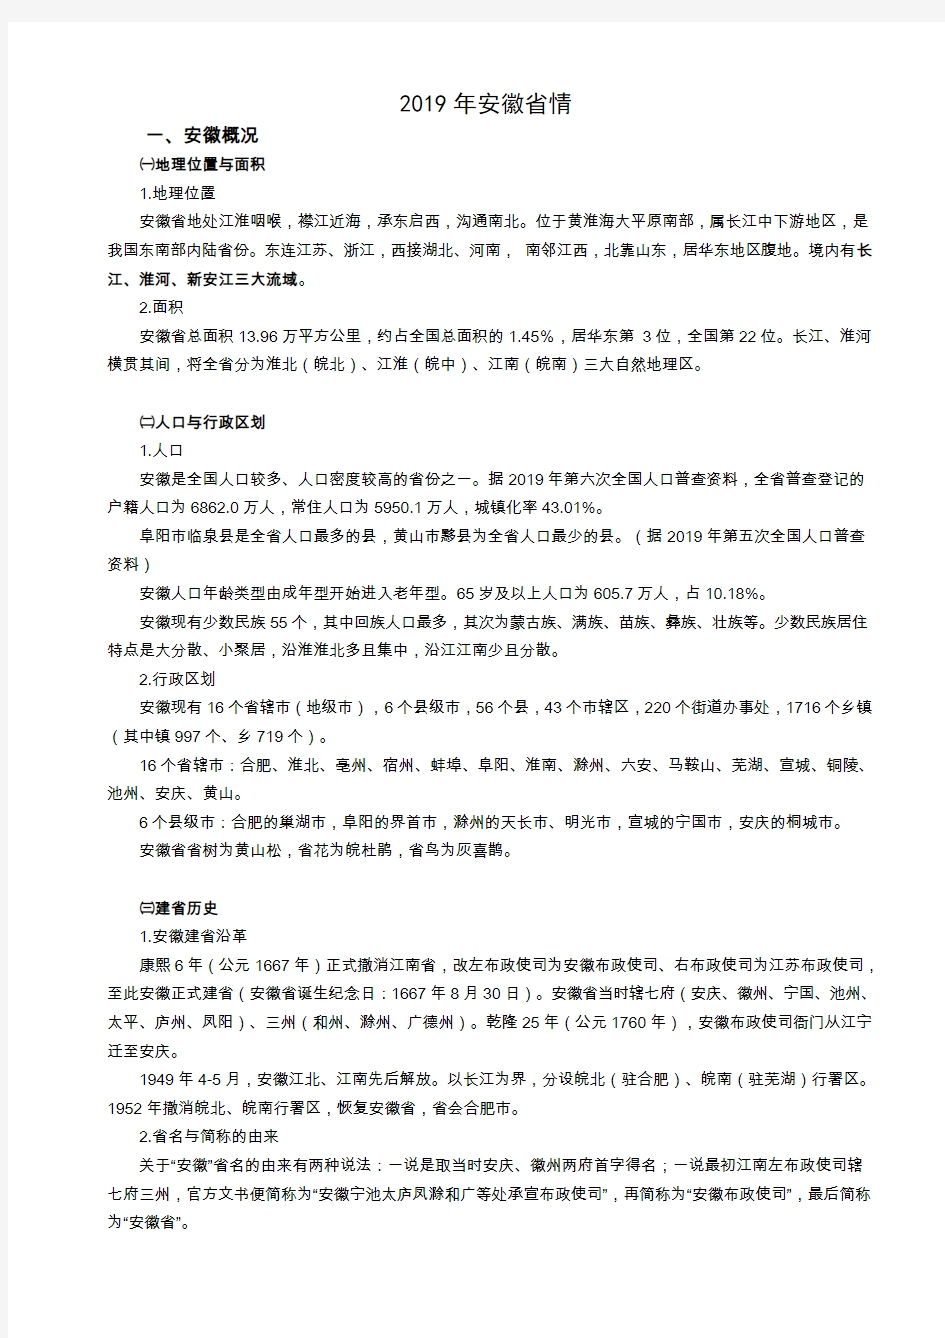 安徽省情常识(完美打印版)汇总-共7页